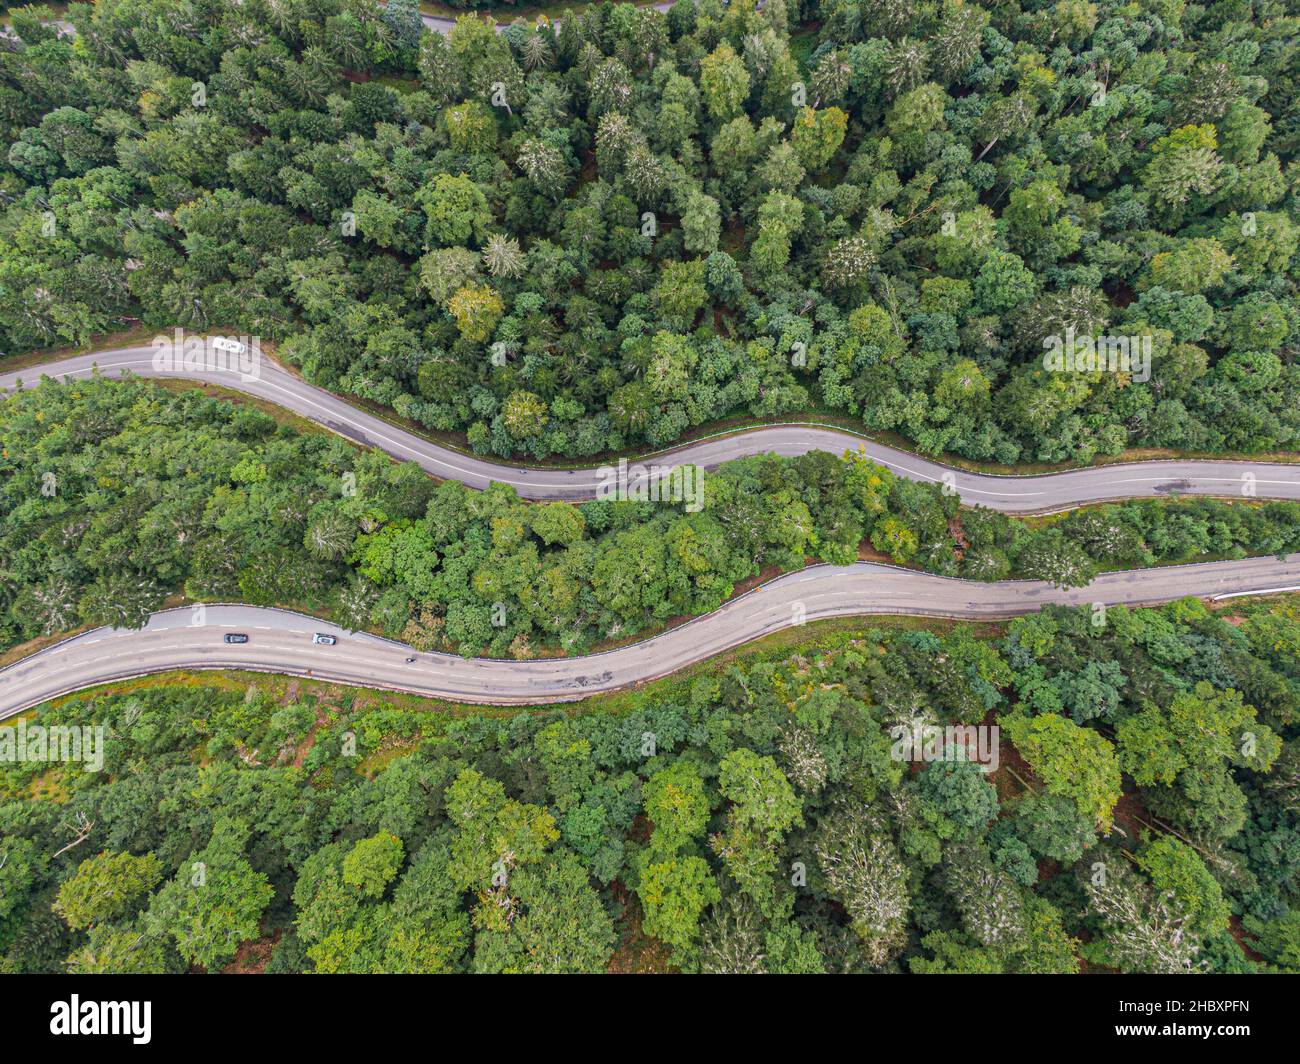 Vista aérea en dos carreteras que cruzan el bosque de coníferas de voges Foto de stock